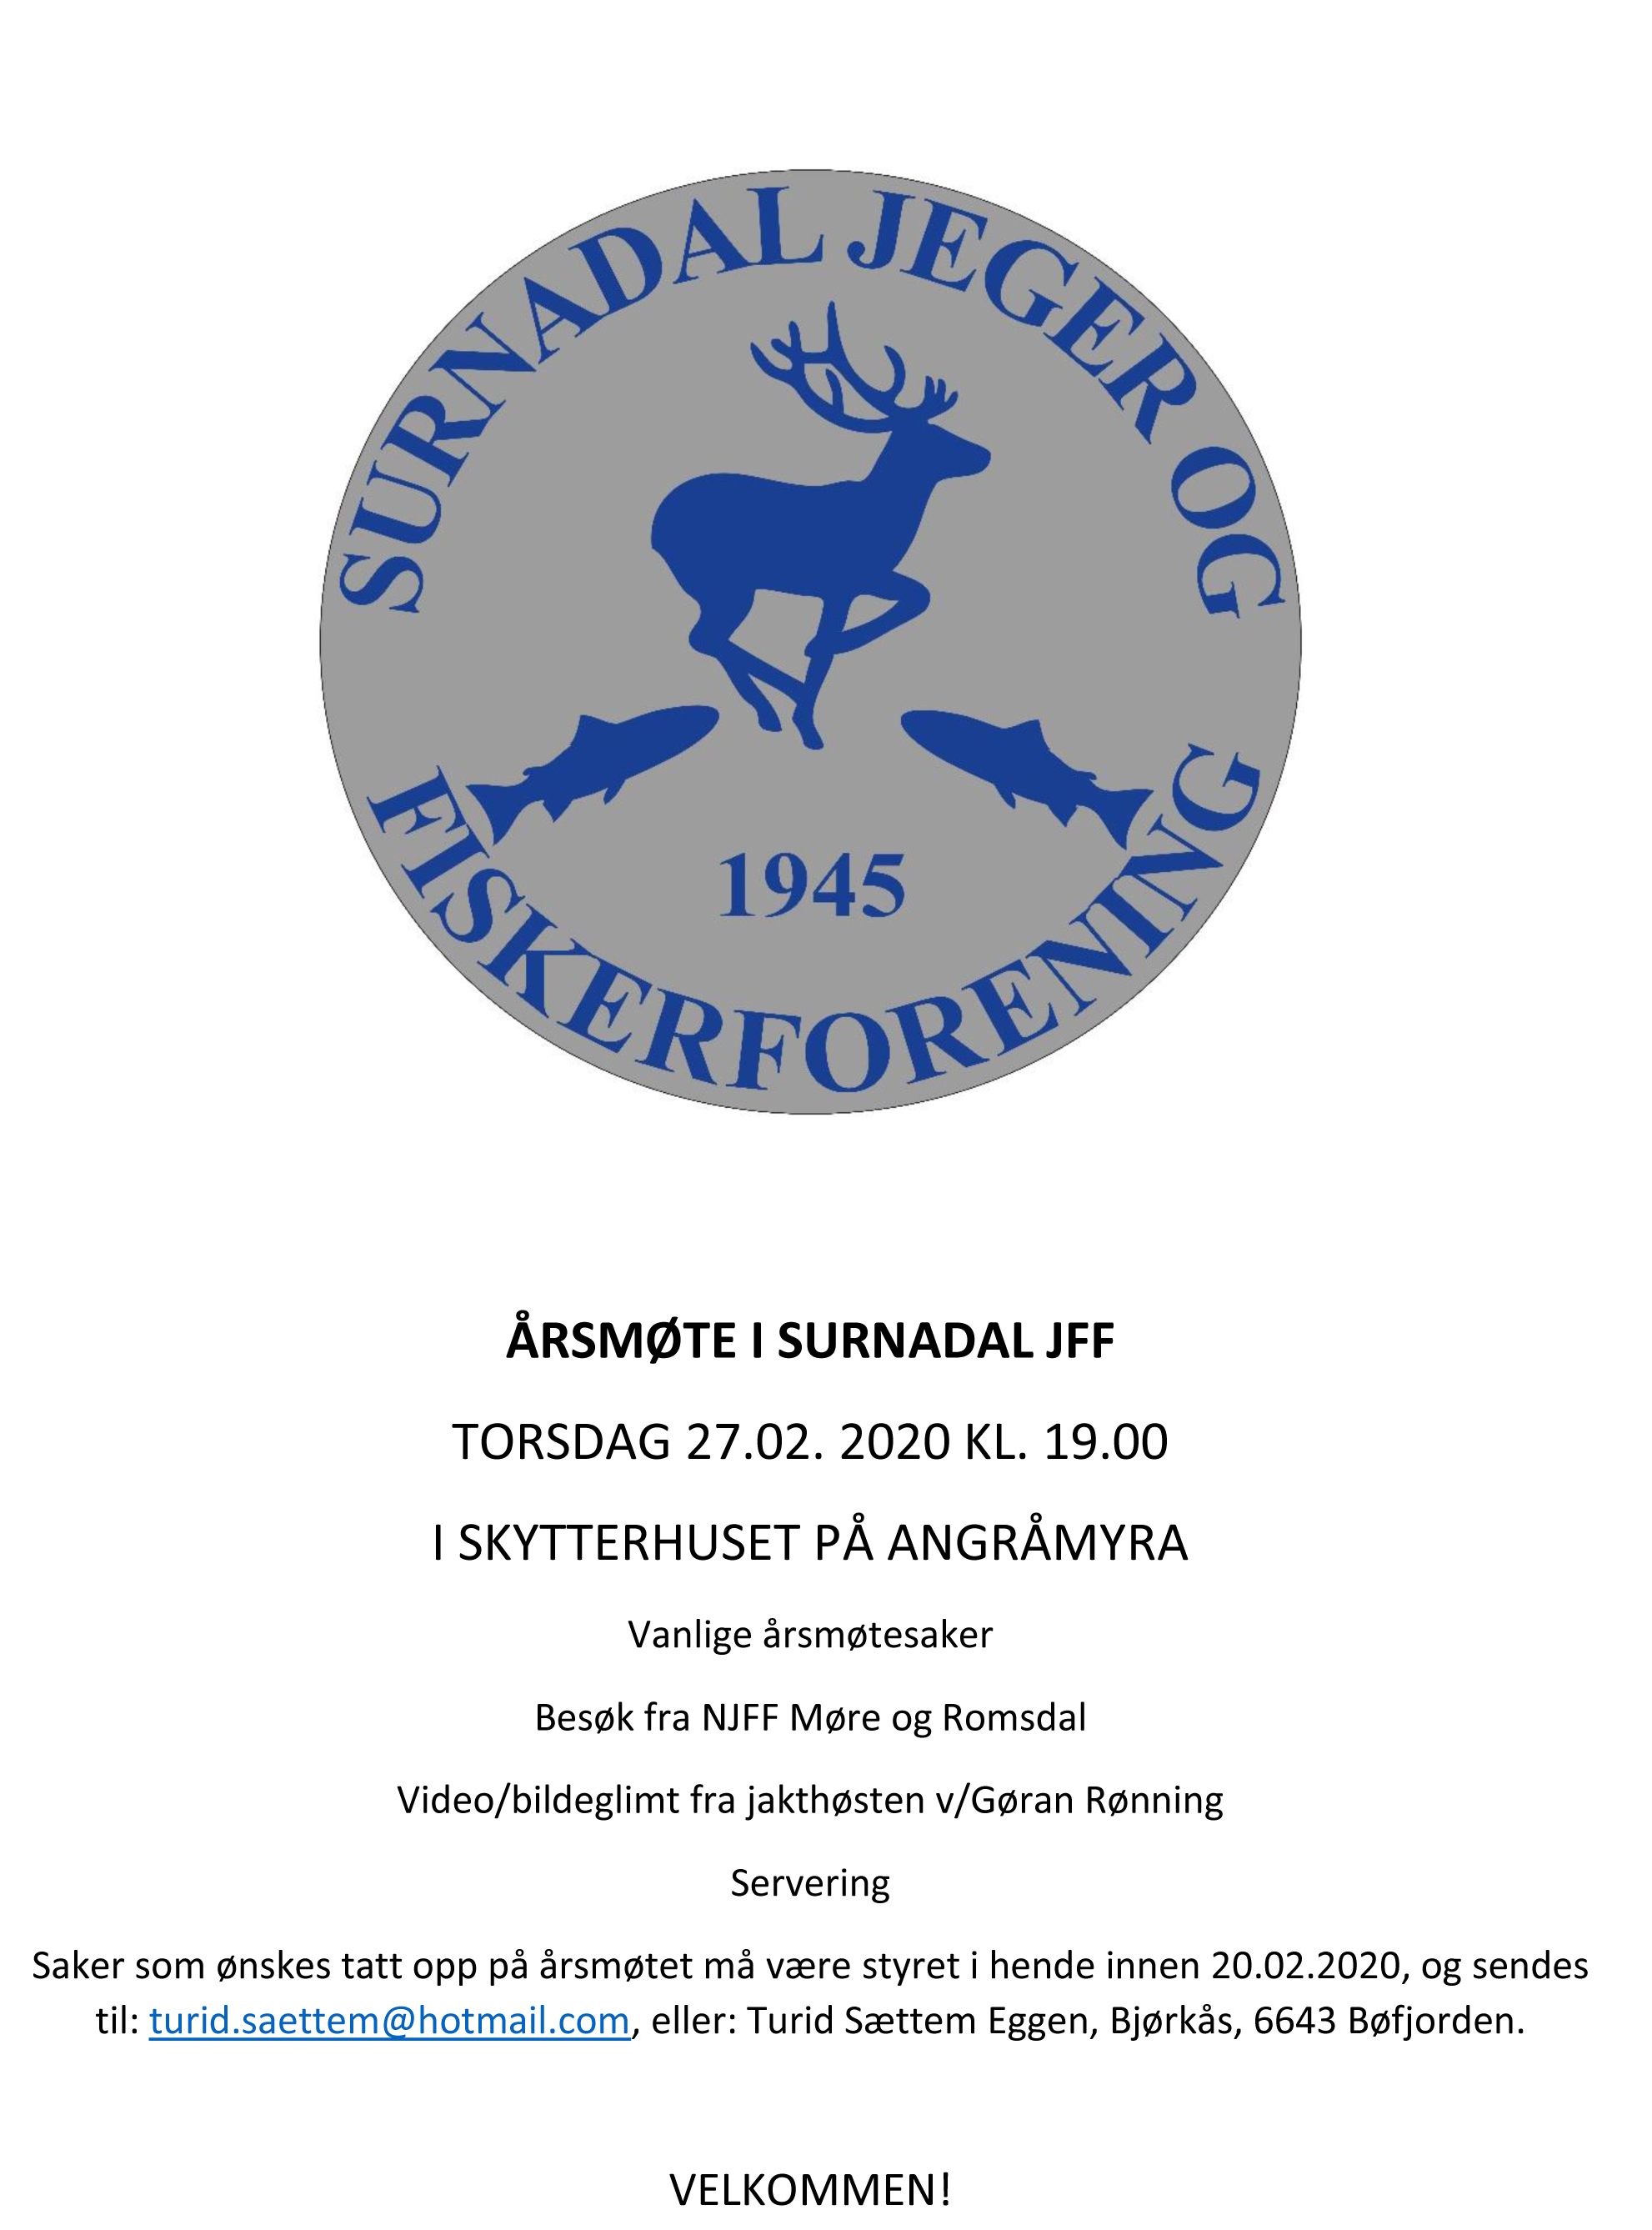 SJFF - Årsmøteplakat - 2020 - pdf.jpg